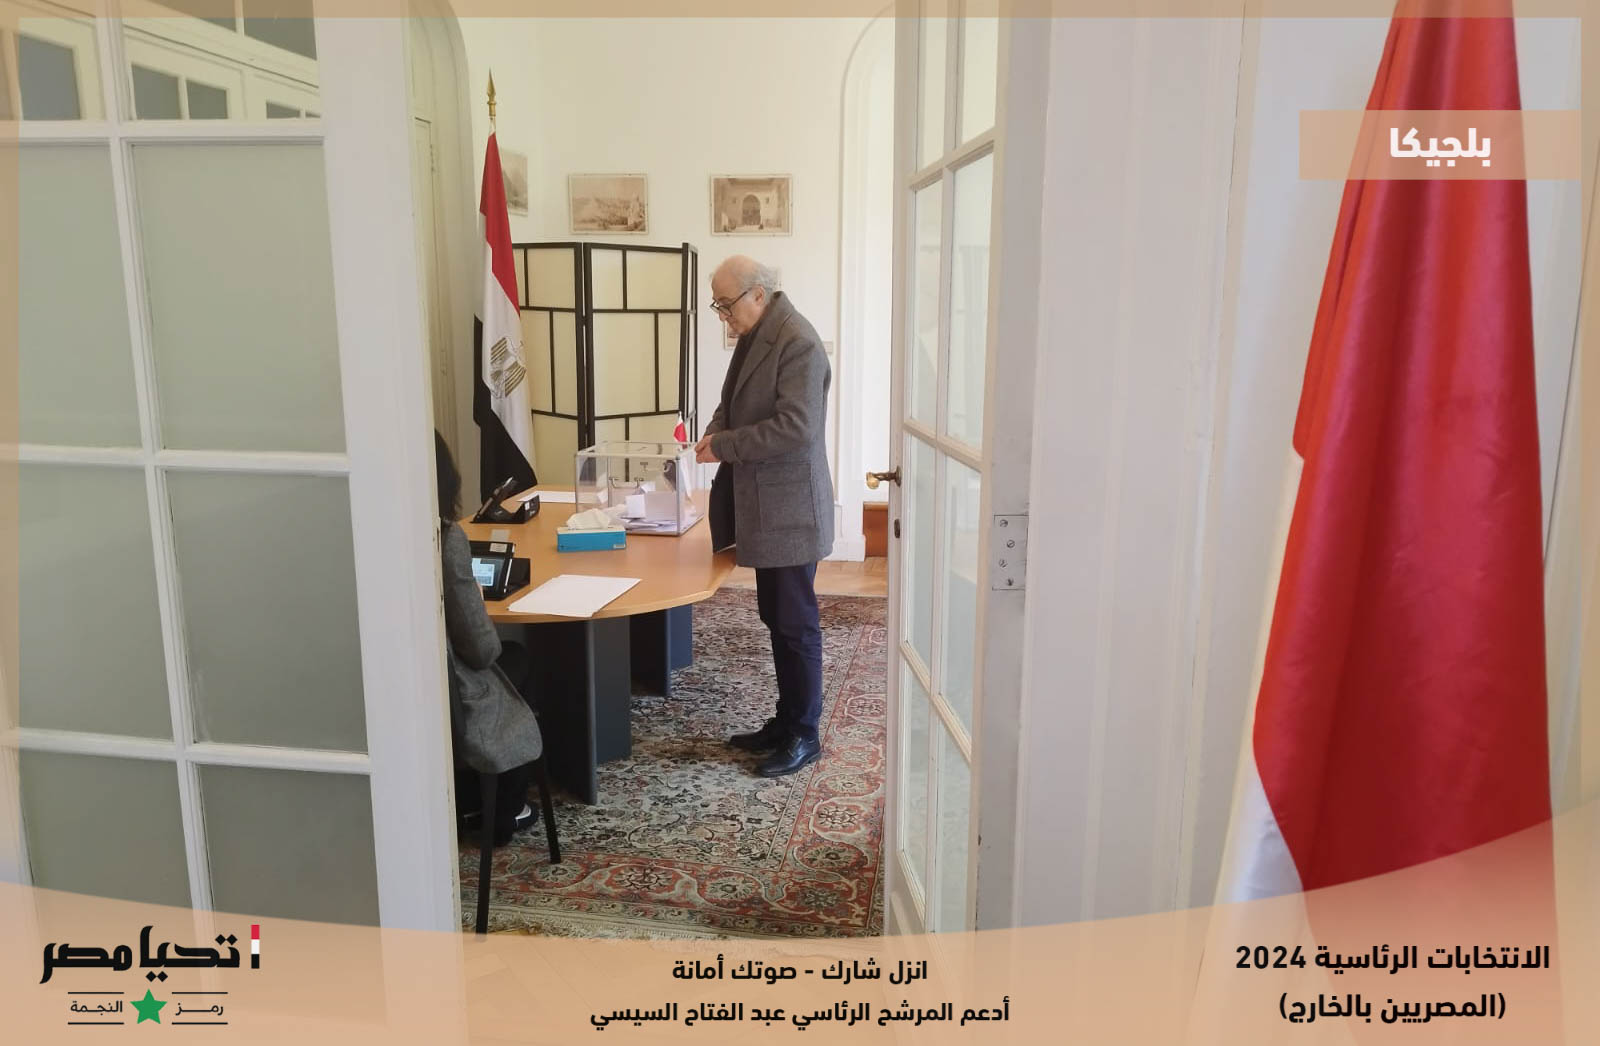 سفير مصر ببلجيكا كبار السن والسيدات جاءوا للتصويت من أماكن بعيدة رغم قسوة الطقس